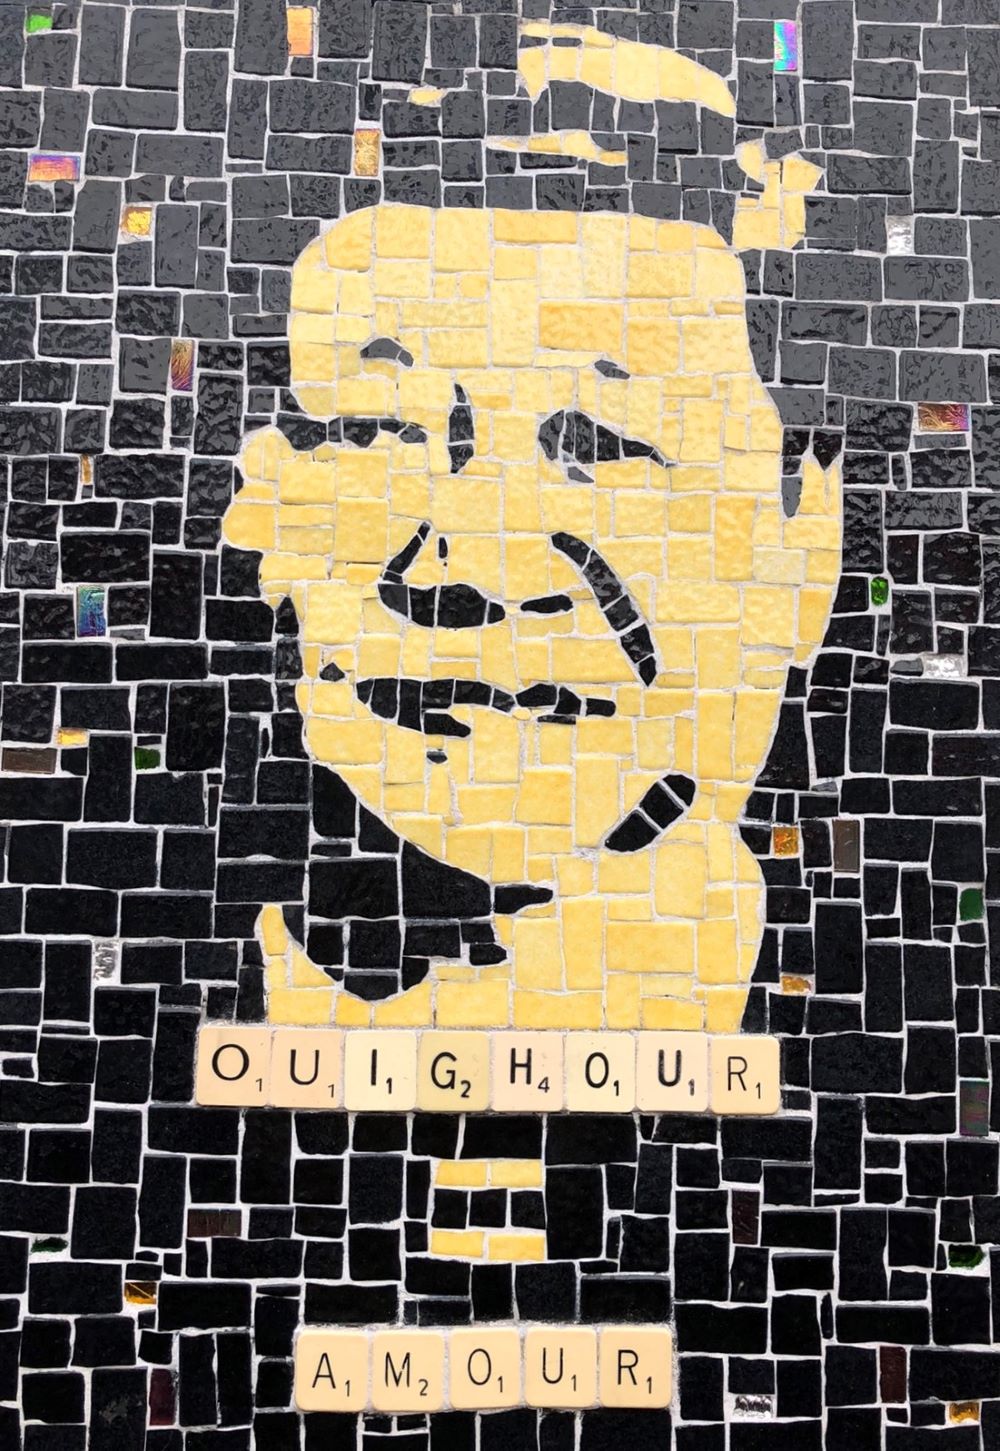 OUIGHOUR AMOUR - schwarz gelbes Mosaik mit einem chinesischen Uigur des Künstlers k.Bal an einer Hauswand im Pariser Quartier La Rochette